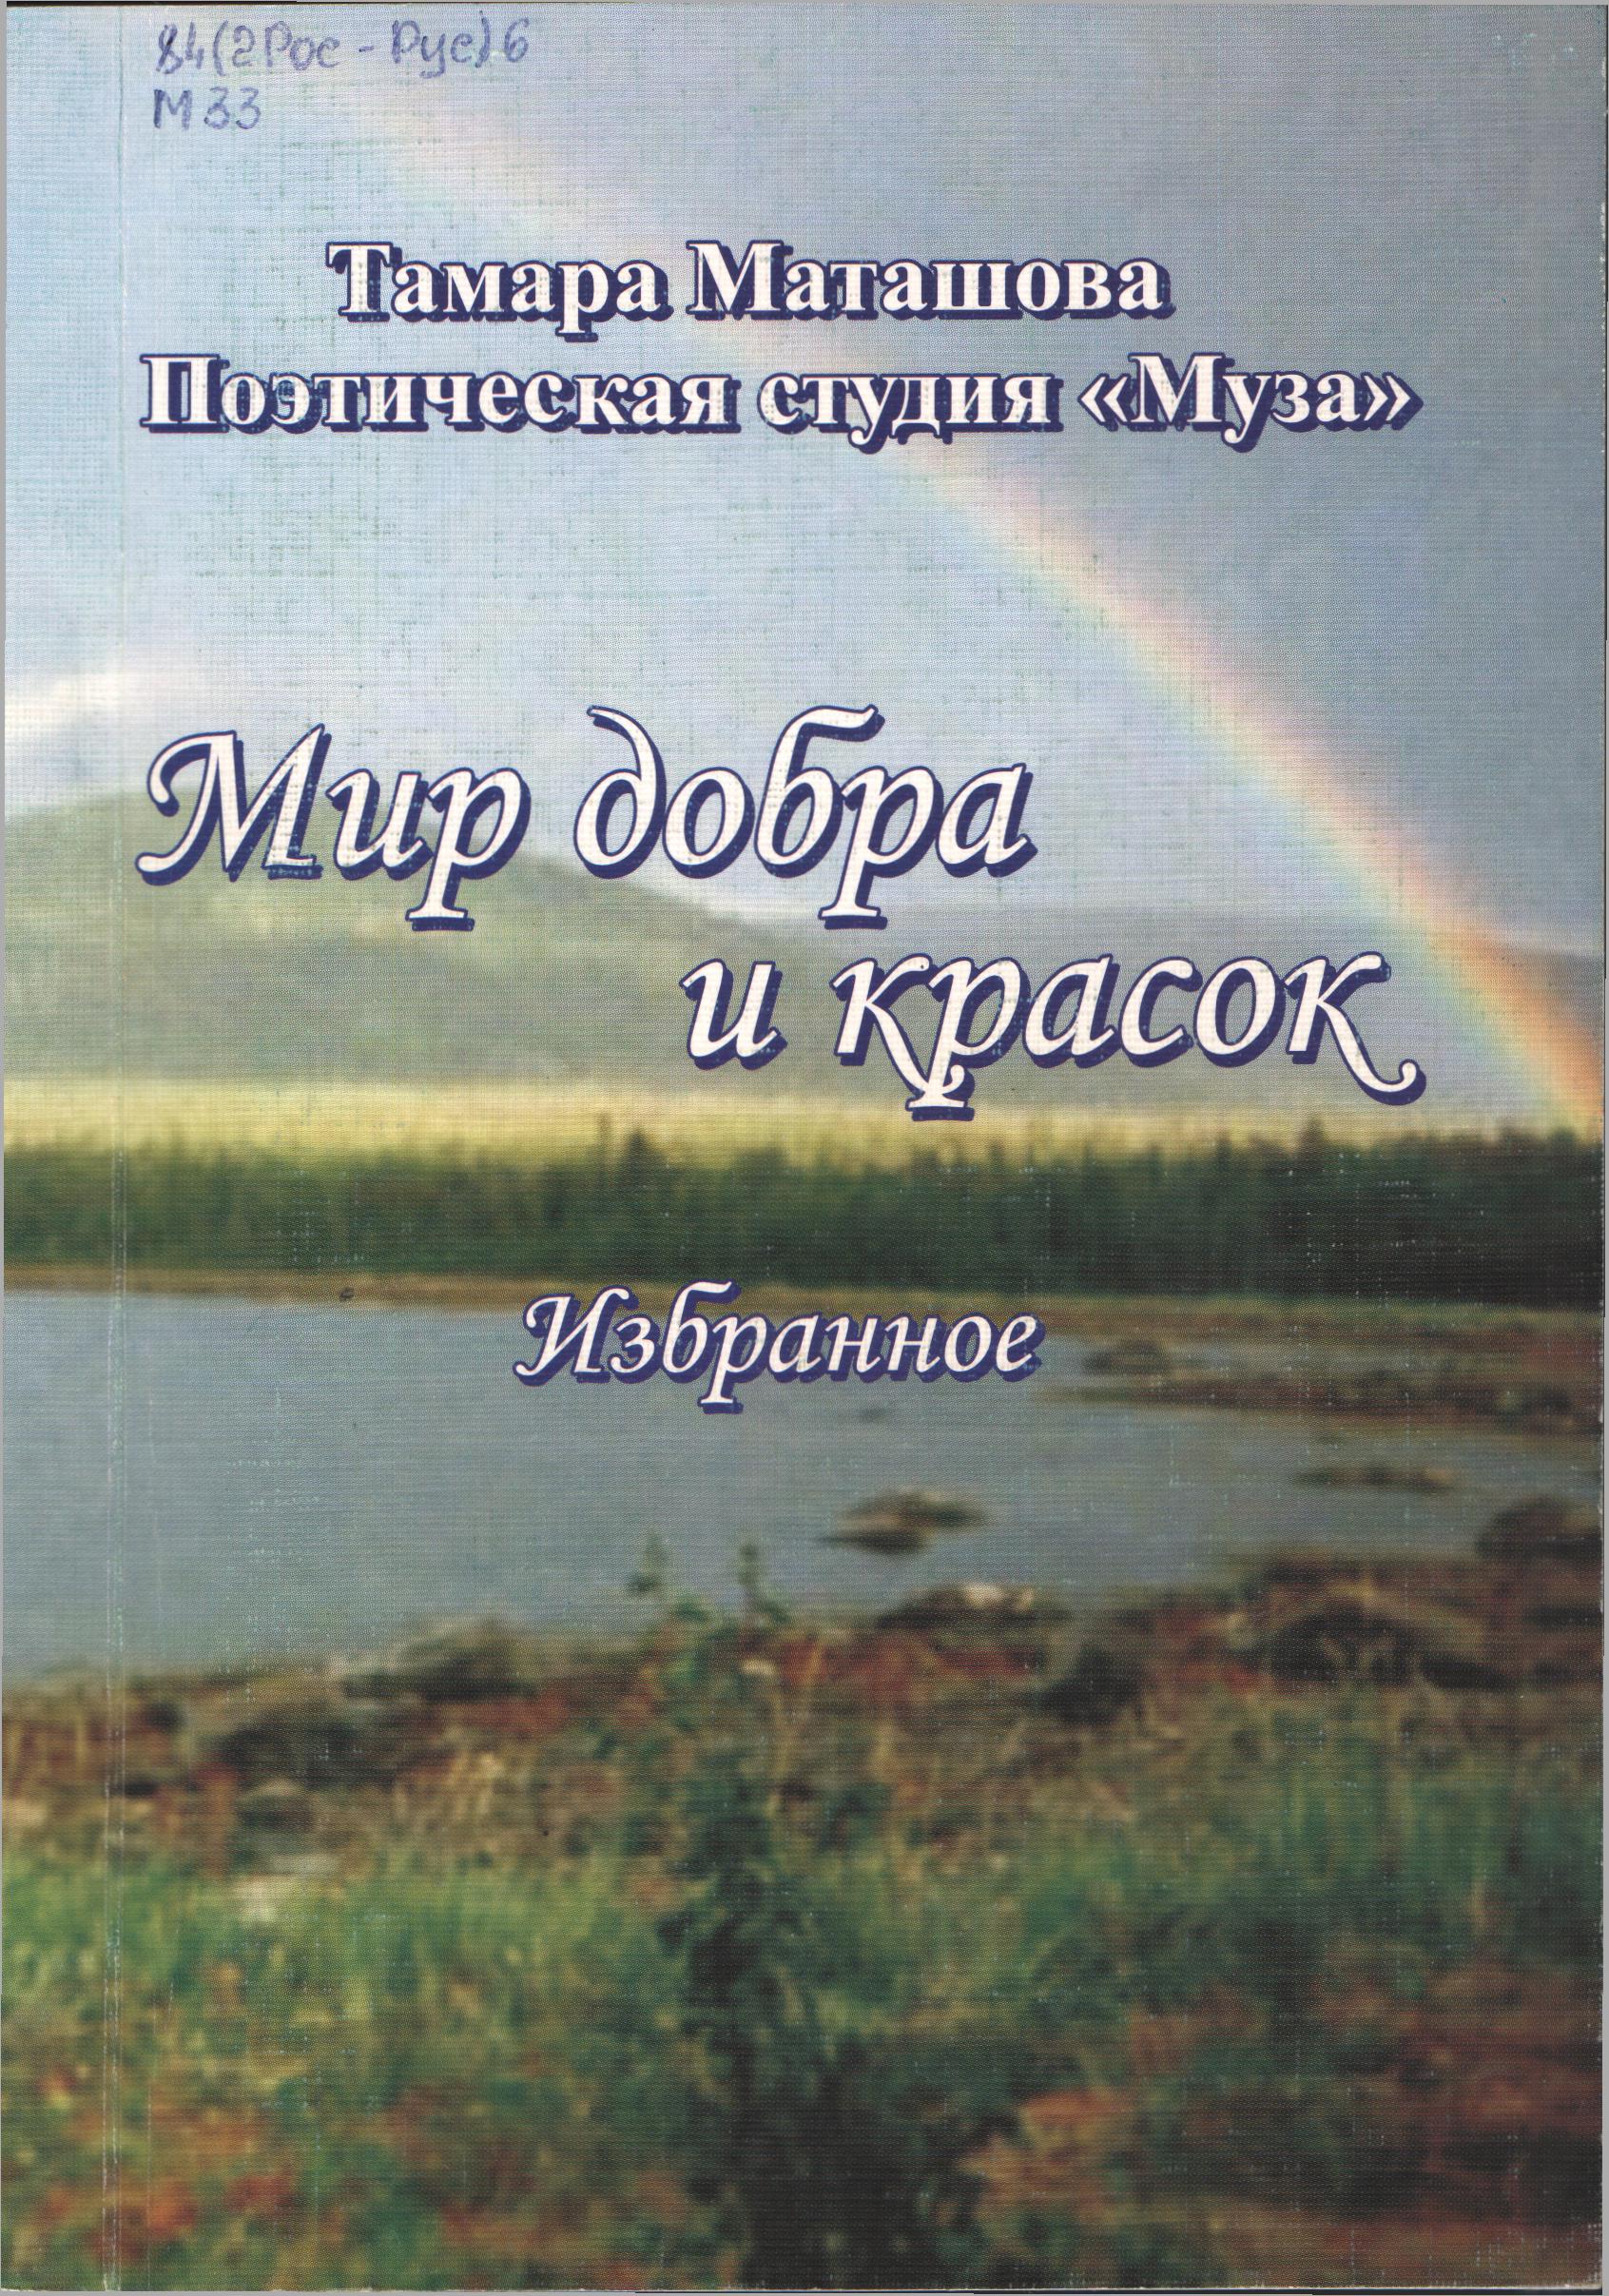 Книги Т.Маташовой